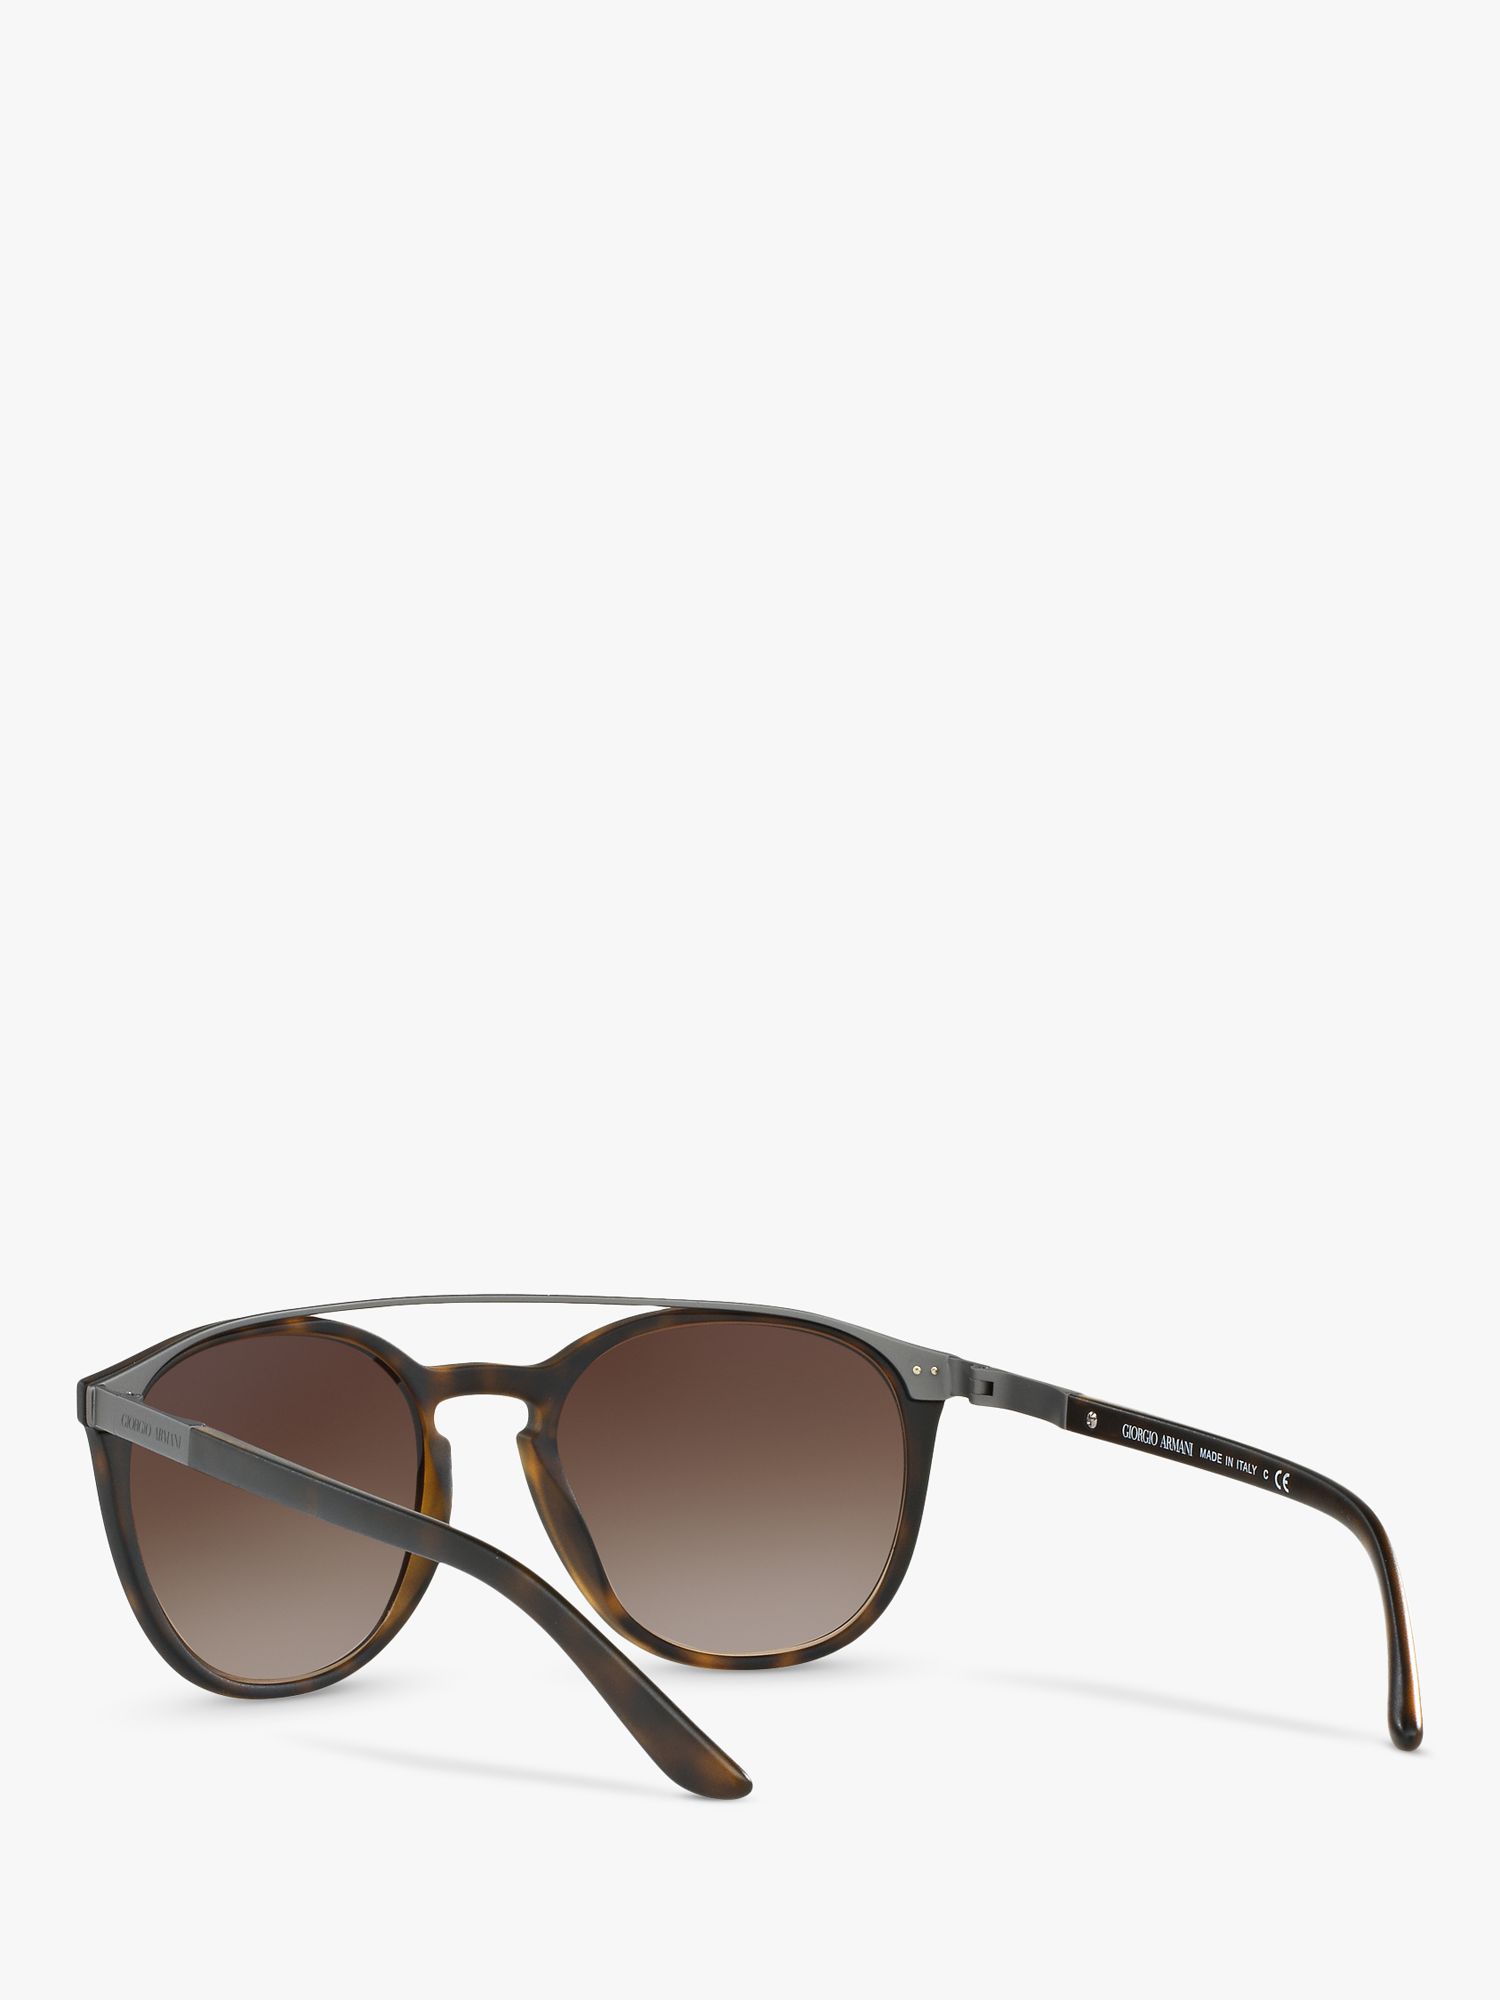 Giorgio Armani AR8088 Women's Oval Sunglasses, Tortoise/Brown Gradient ...